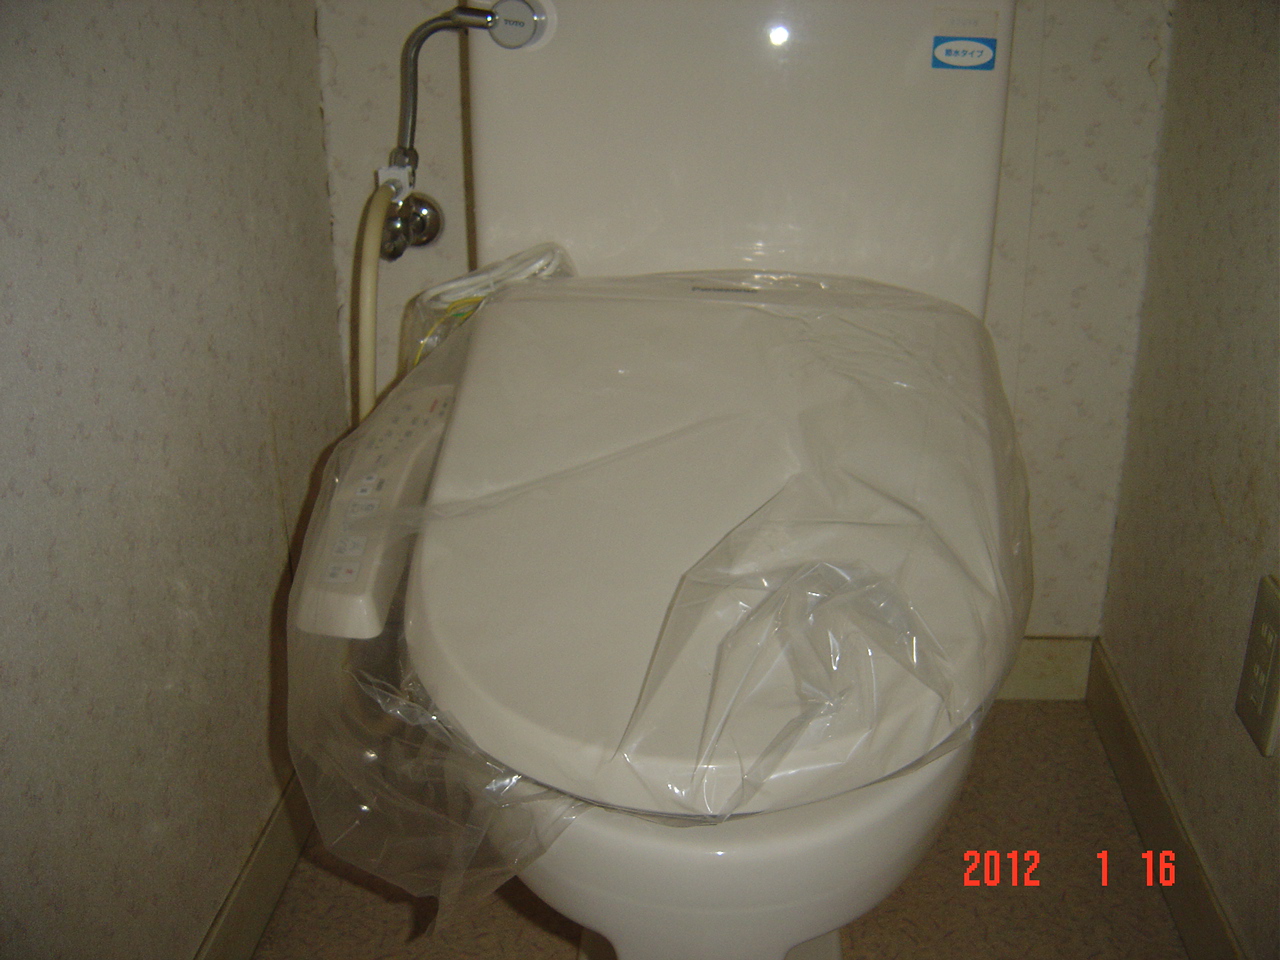 Toilet. Washlet with